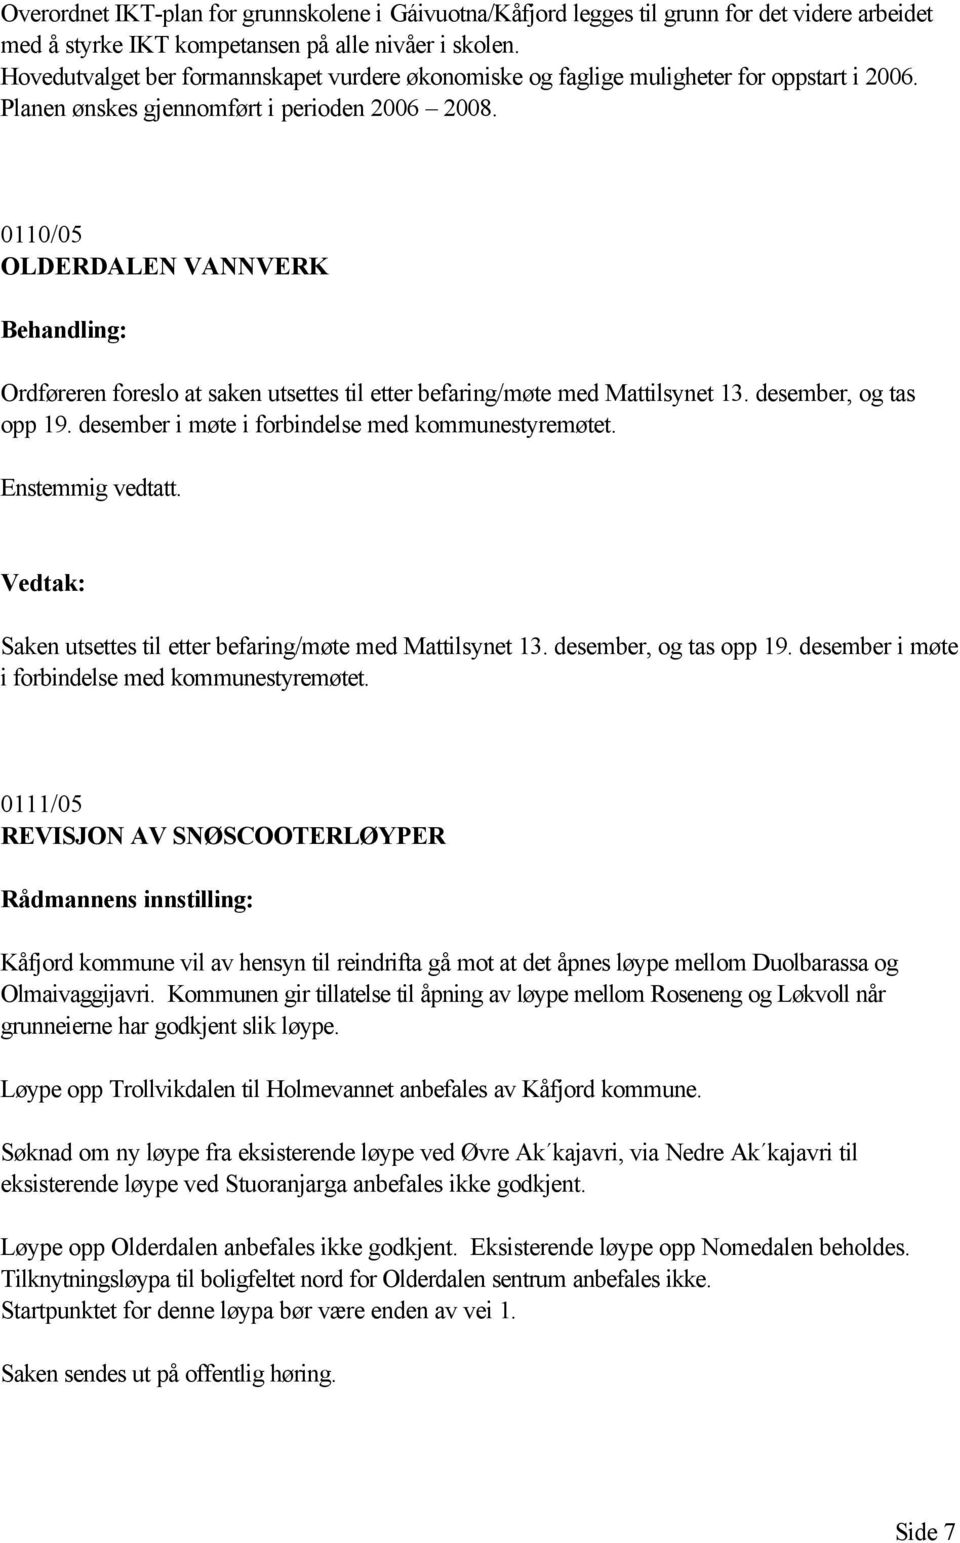 0110/05 OLDERDALEN VANNVERK Ordføreren foreslo at saken utsettes til etter befaring/møte med Mattilsynet 13. desember, og tas opp 19. desember i møte i forbindelse med kommunestyremøtet.